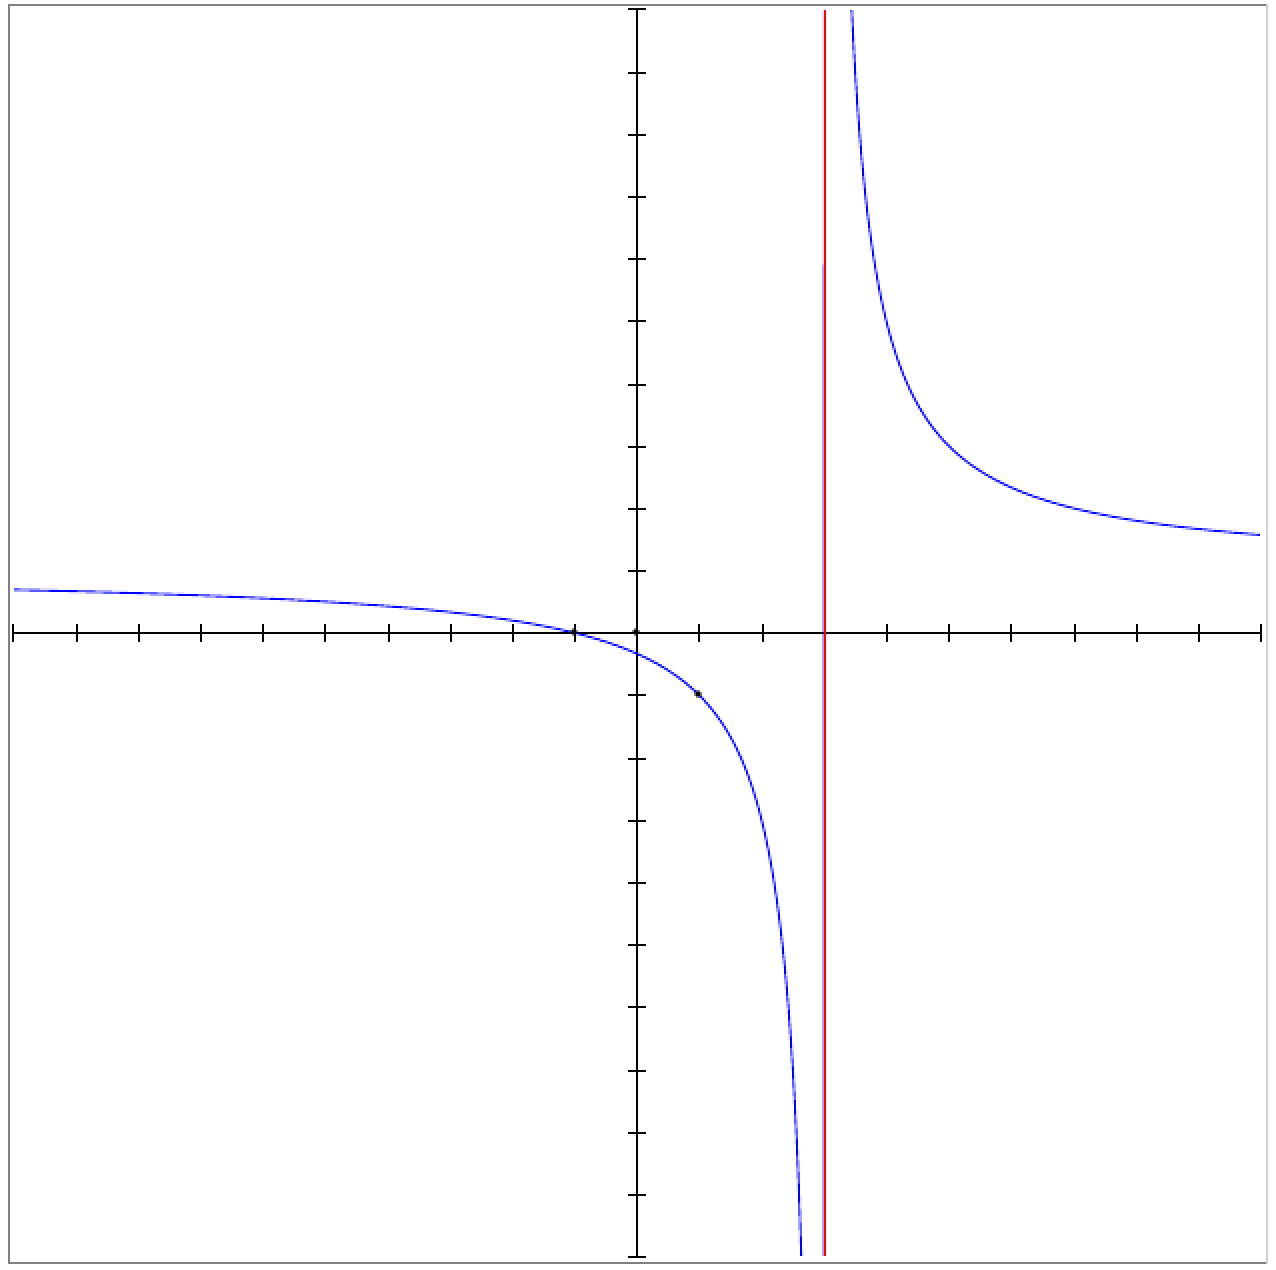 représentation graphique d'une fonction